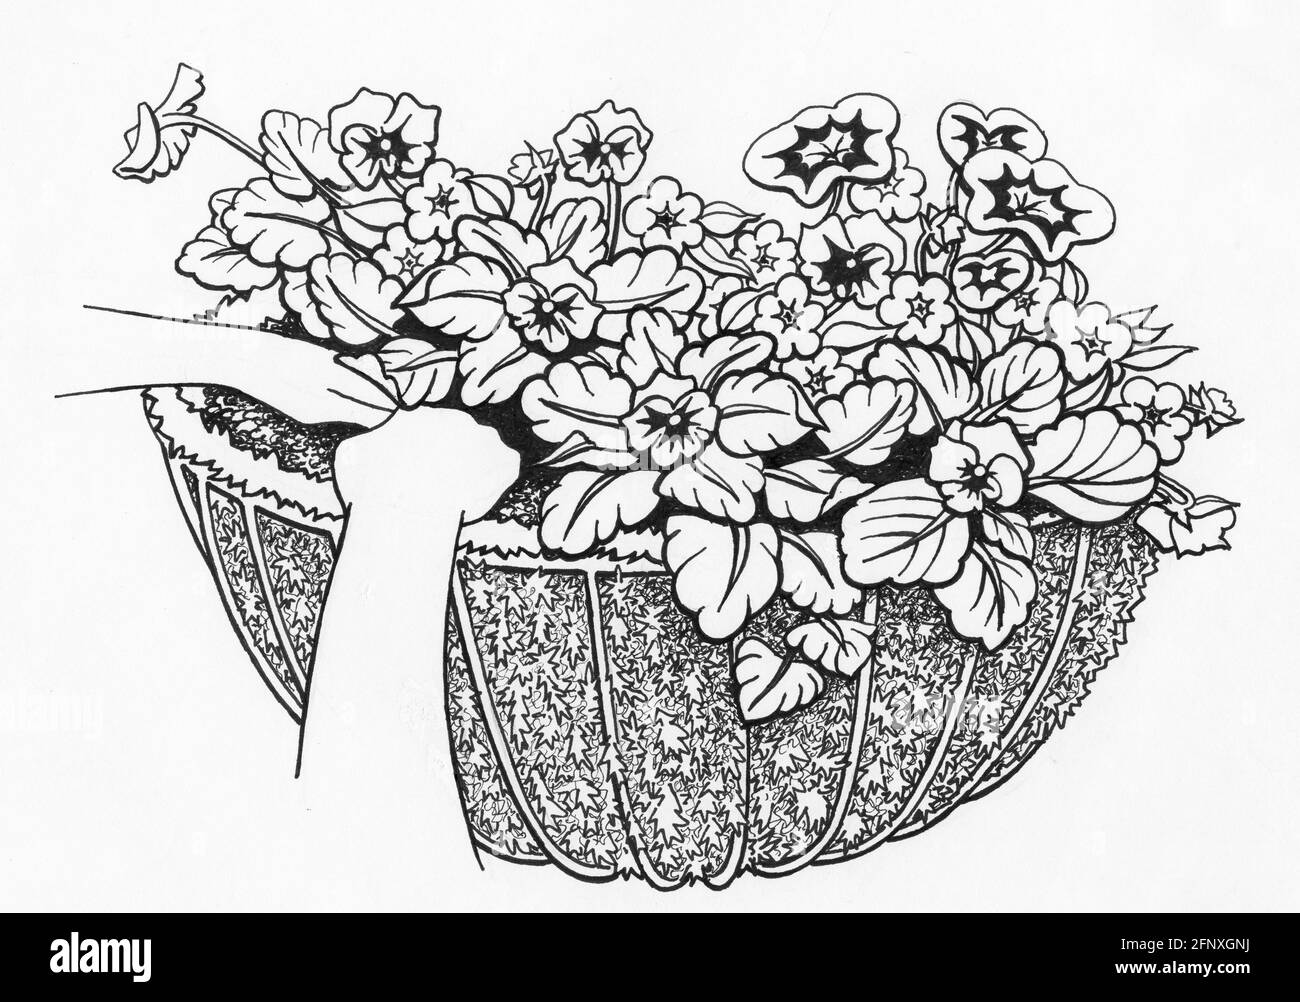 Dessin d'un panier mural complet avec un sphagnum doublure en mousse et plantes à fleurs Banque D'Images